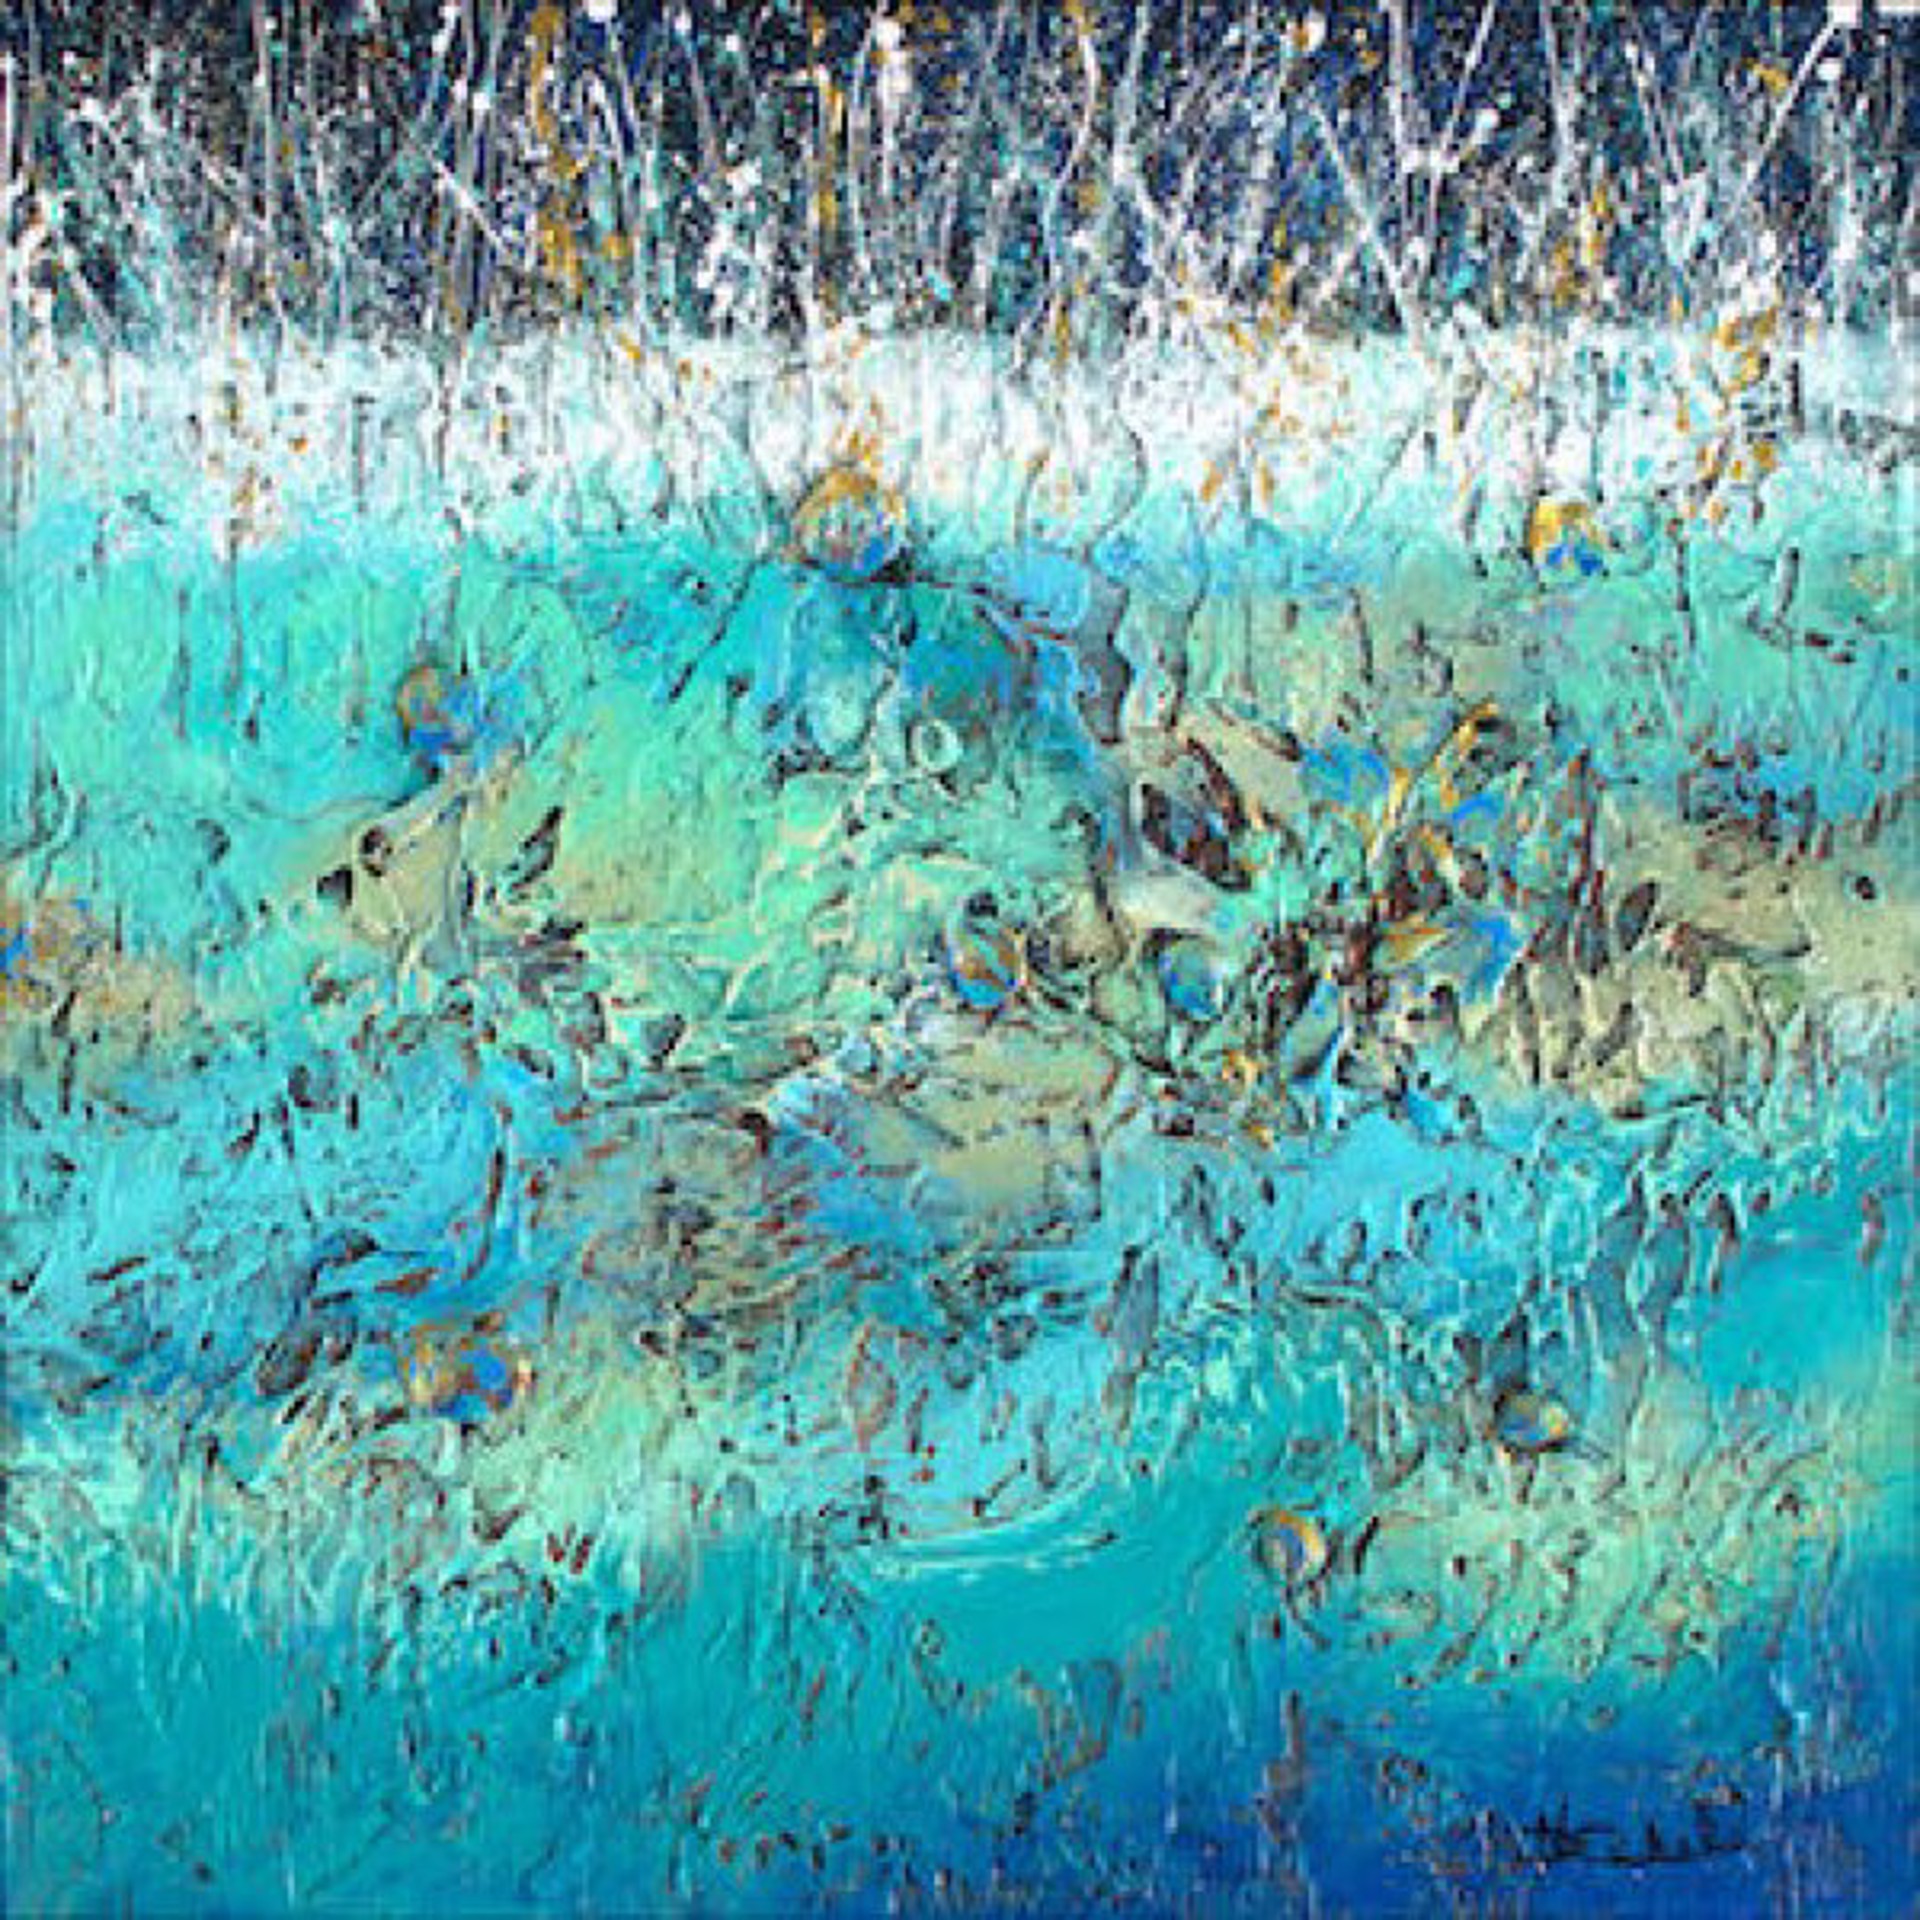 Nancy Eckels: Splashes Of Bling by Nancy Eckels